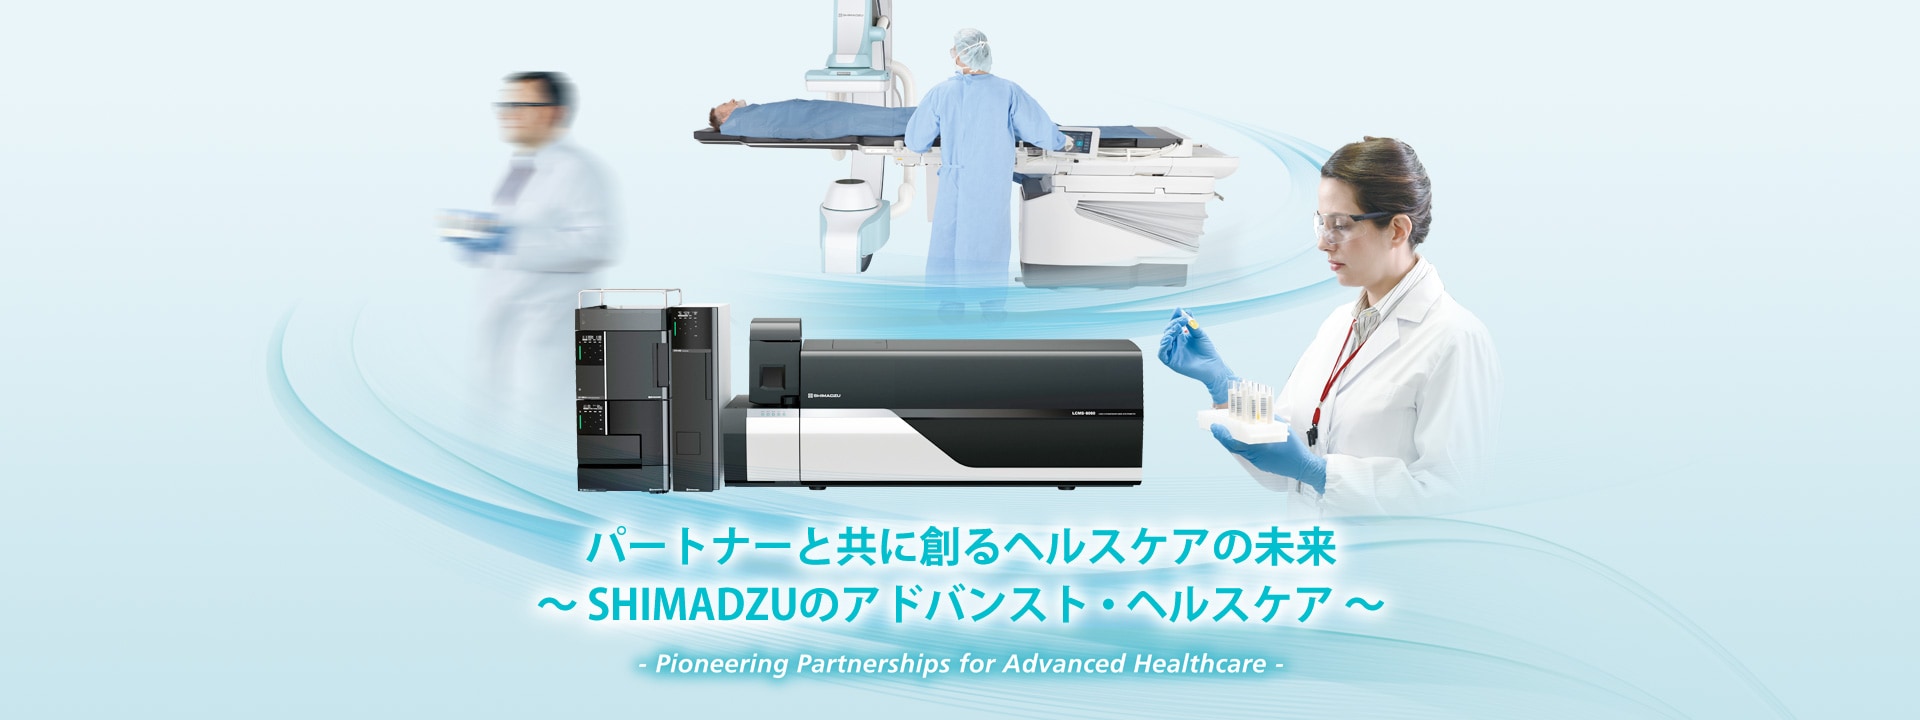 パートナーと共に創るヘルスケアの未来～ SHIMADZUのアドバンスト・ヘルスケア ～ -Pioneering Partnerships for Advanced Healthcare-